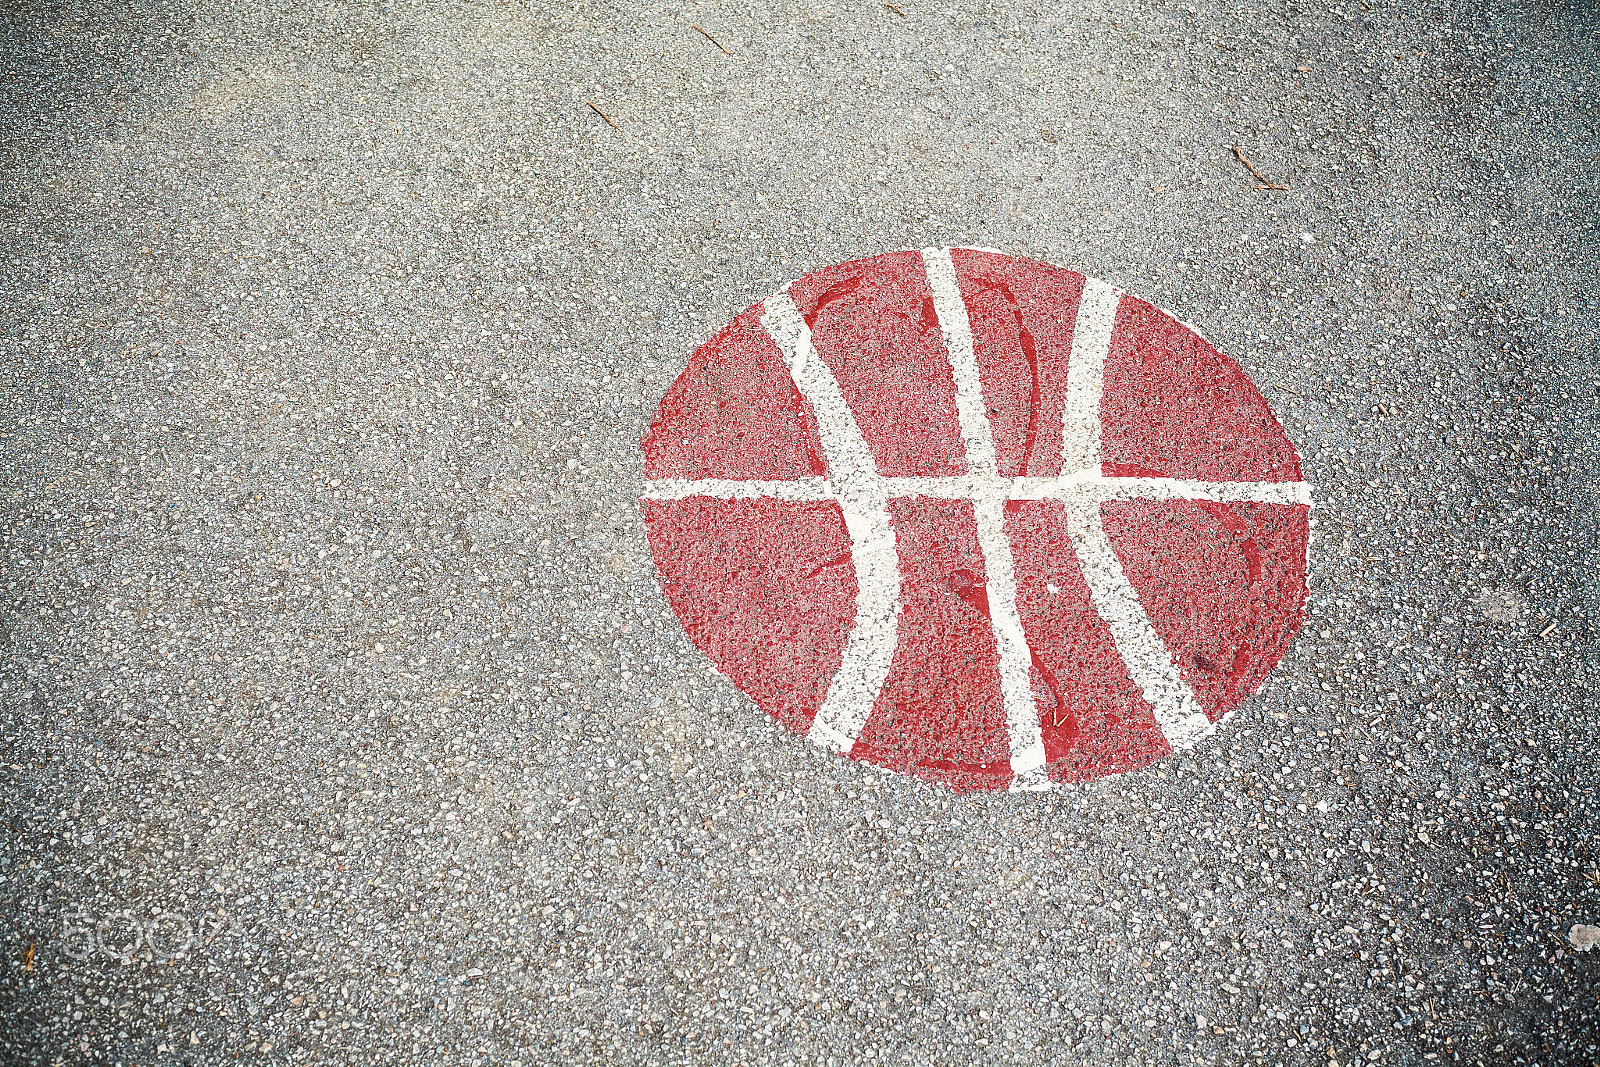 Canon EOS 5D Mark II sample photo. Basketball courtyard asphalt photography